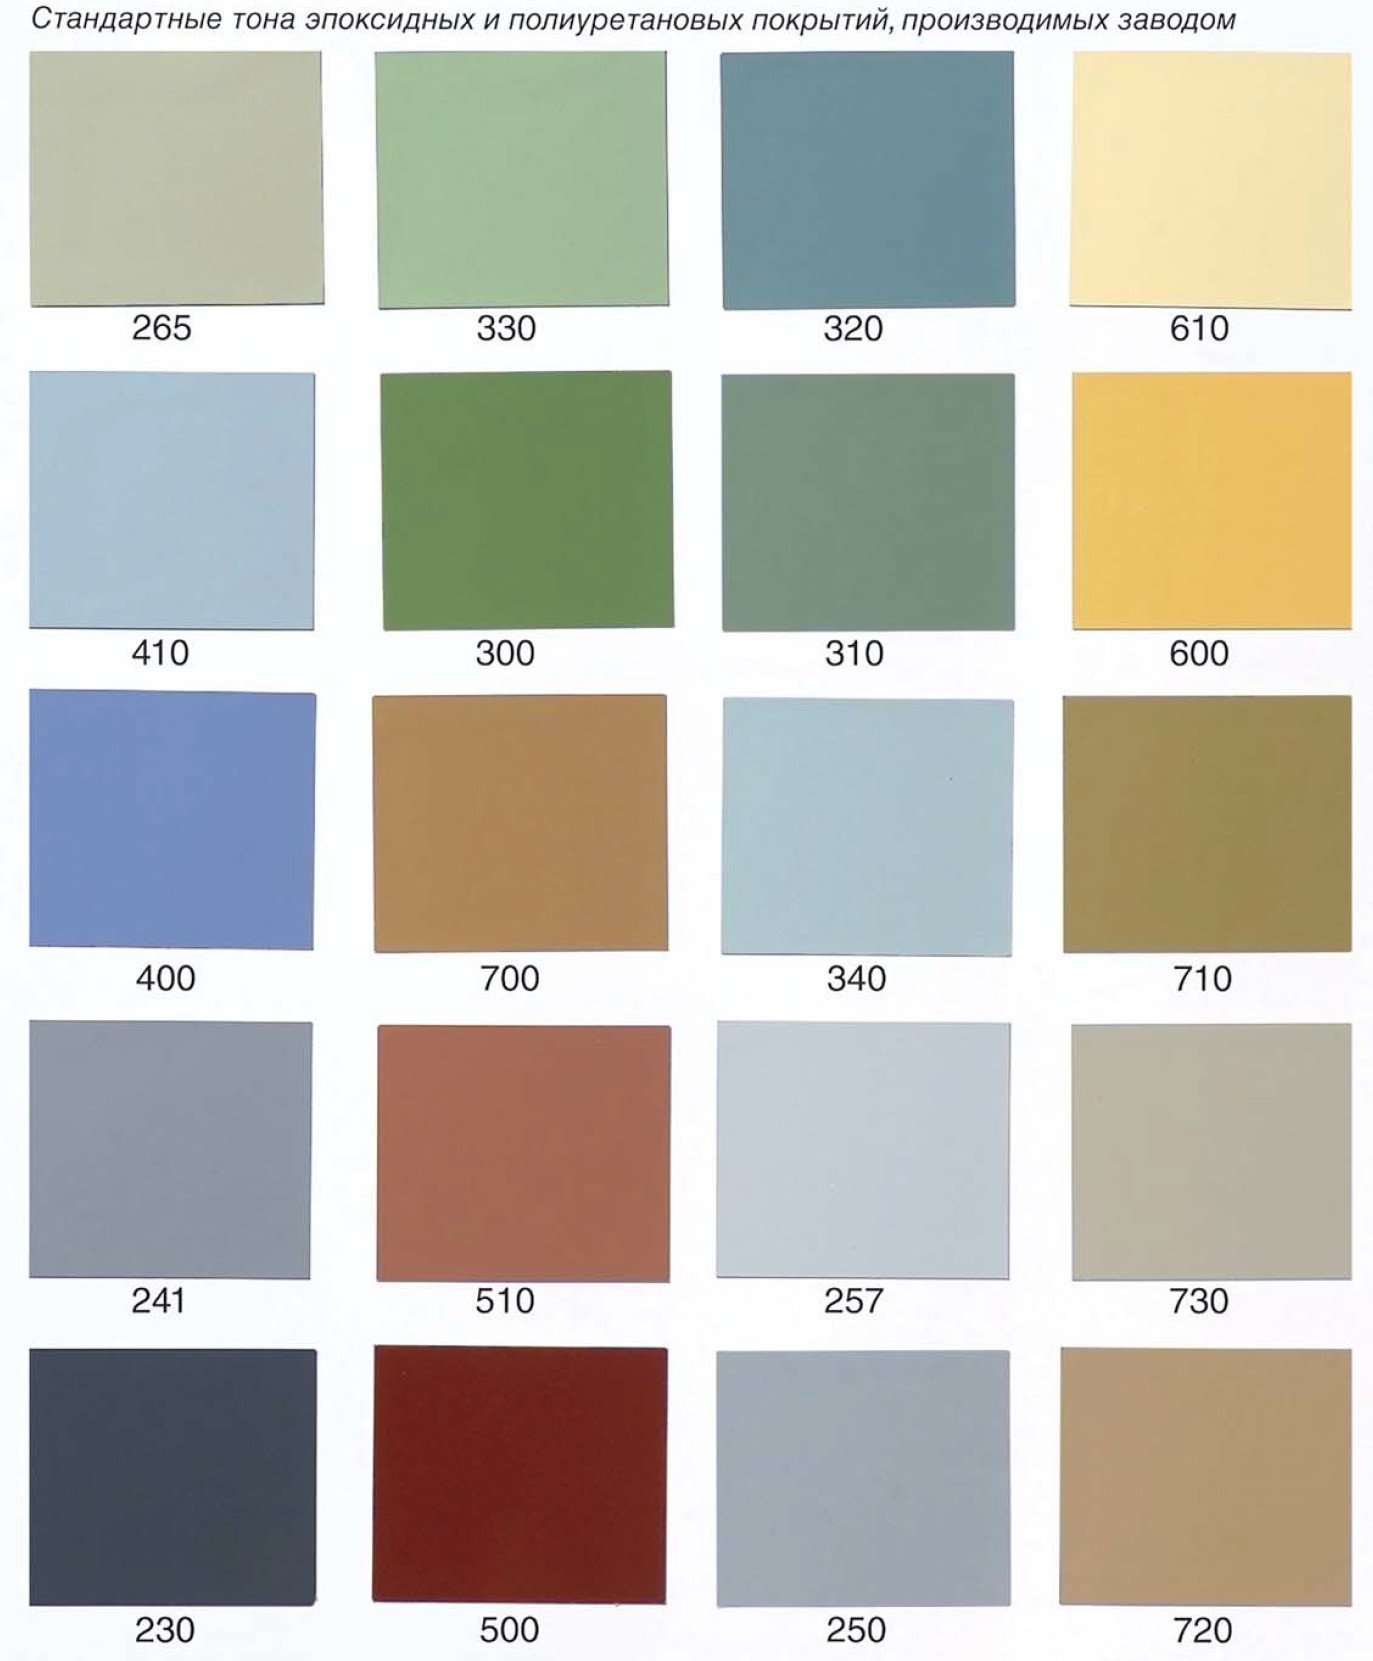 Таблица выбора цвета бетонных полов